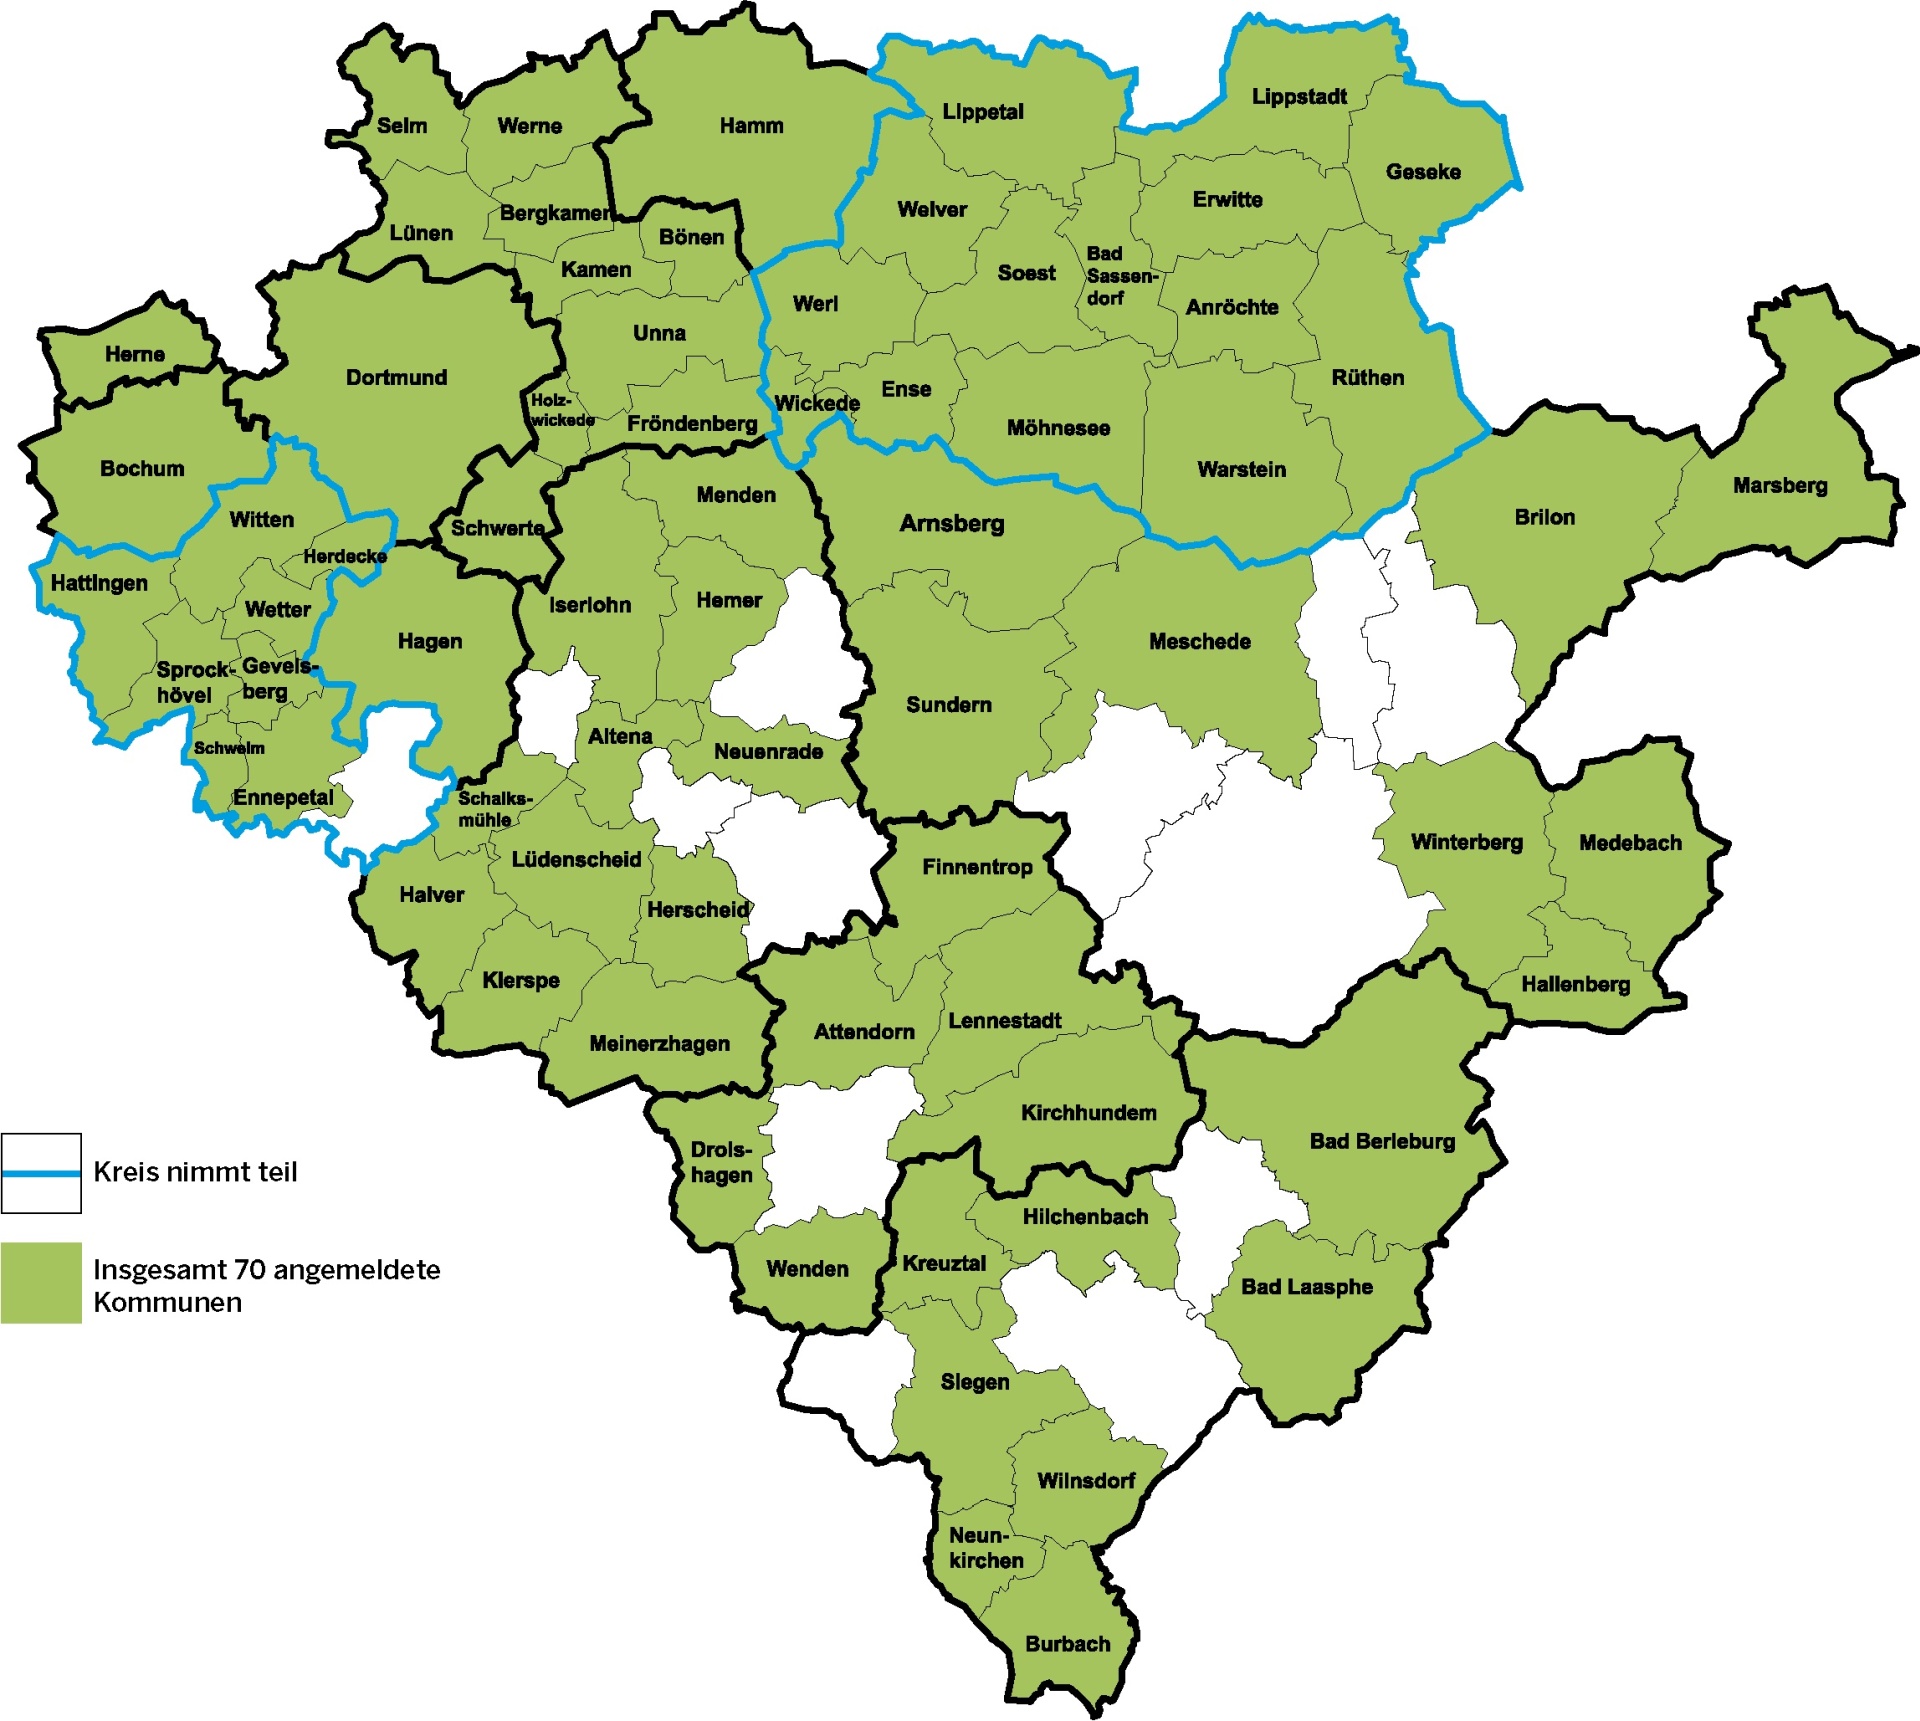 Teilnehmende Kommunenan der Klimakampagne im Regierungsbezirk Arnsberg (Stand: 21.04.2021)